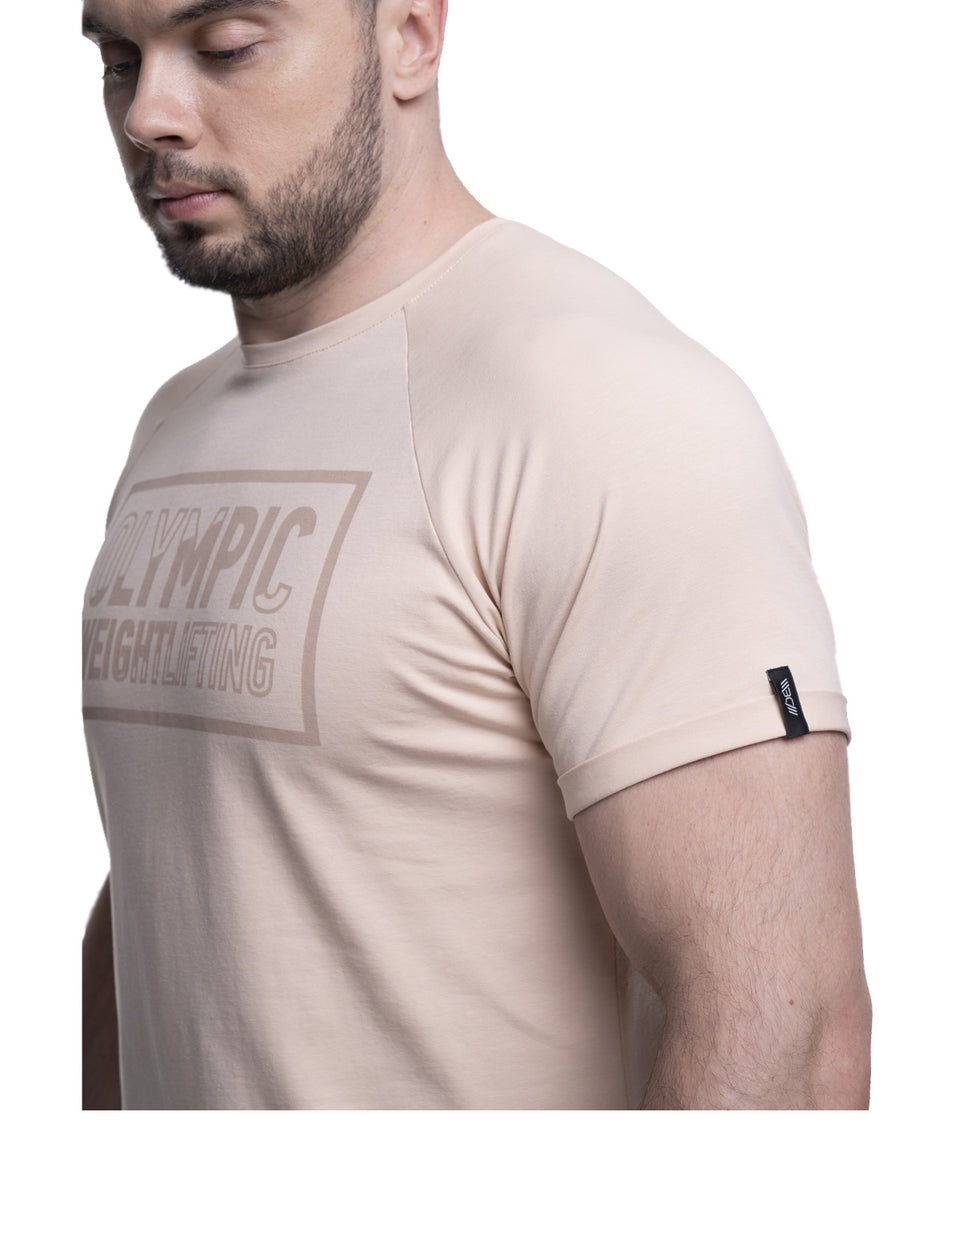 Droop Opbevares i køleskab Landskab ➤ Men's T-Shirt Olympic Weightlifting – Price from $22 – Warm Body Cold  Mind TM